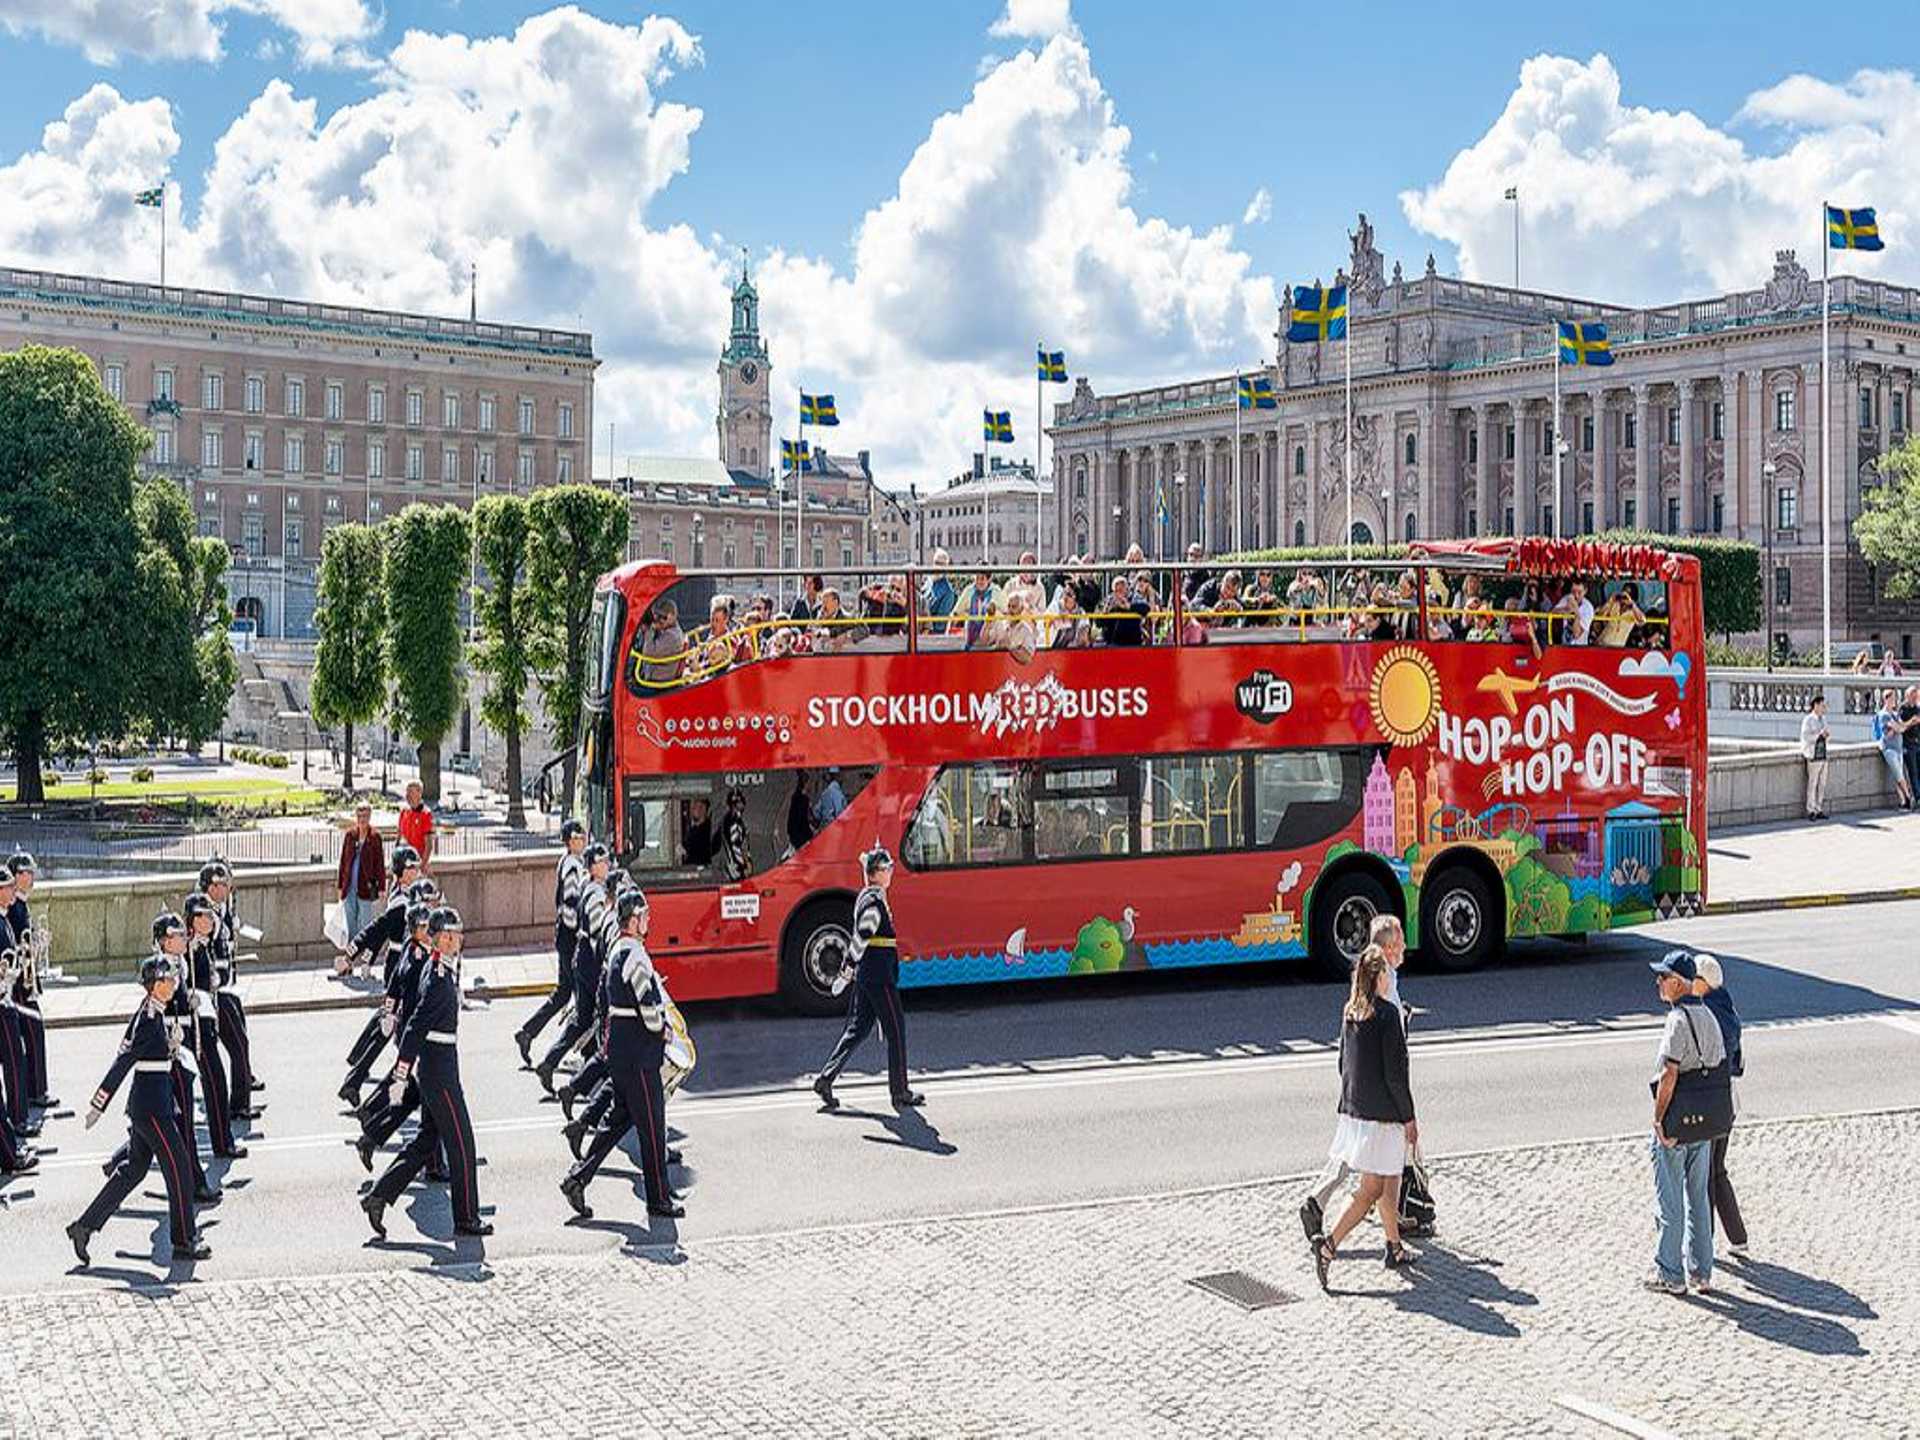 Stockholm Red Buses Hop-On Hop-Off